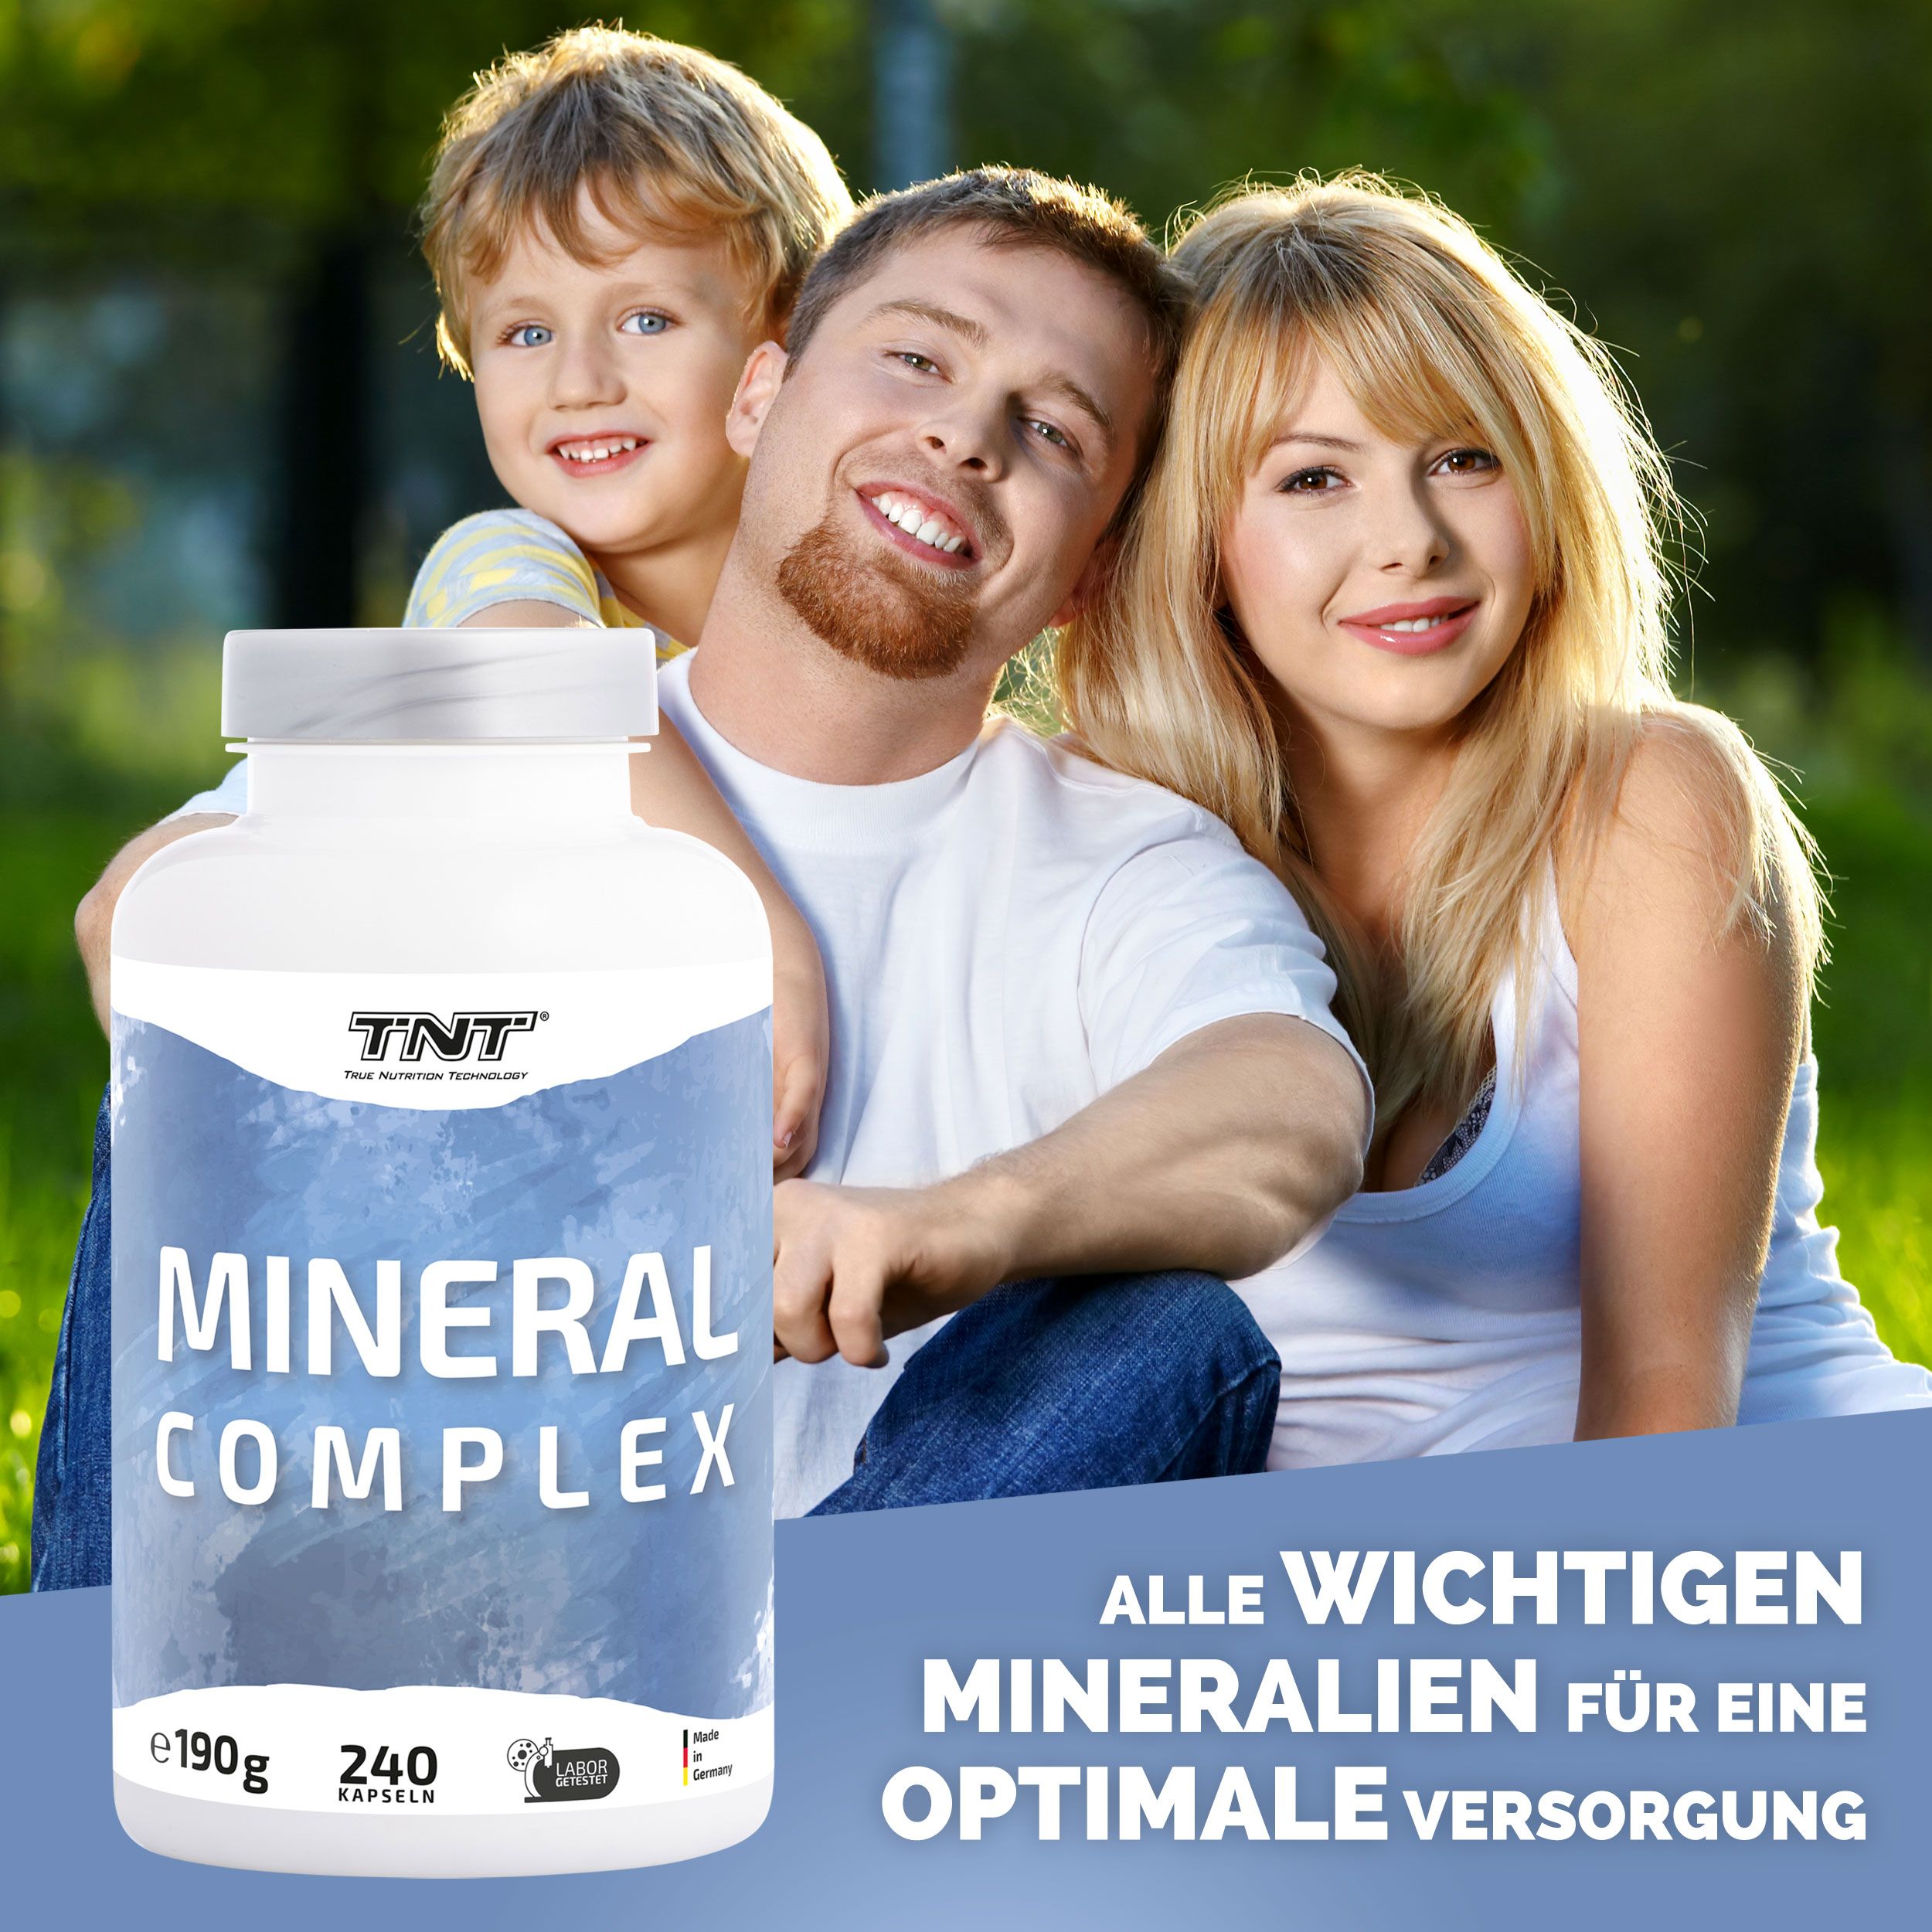 TNT Mineral Complex - 10 wichtige Mineralien